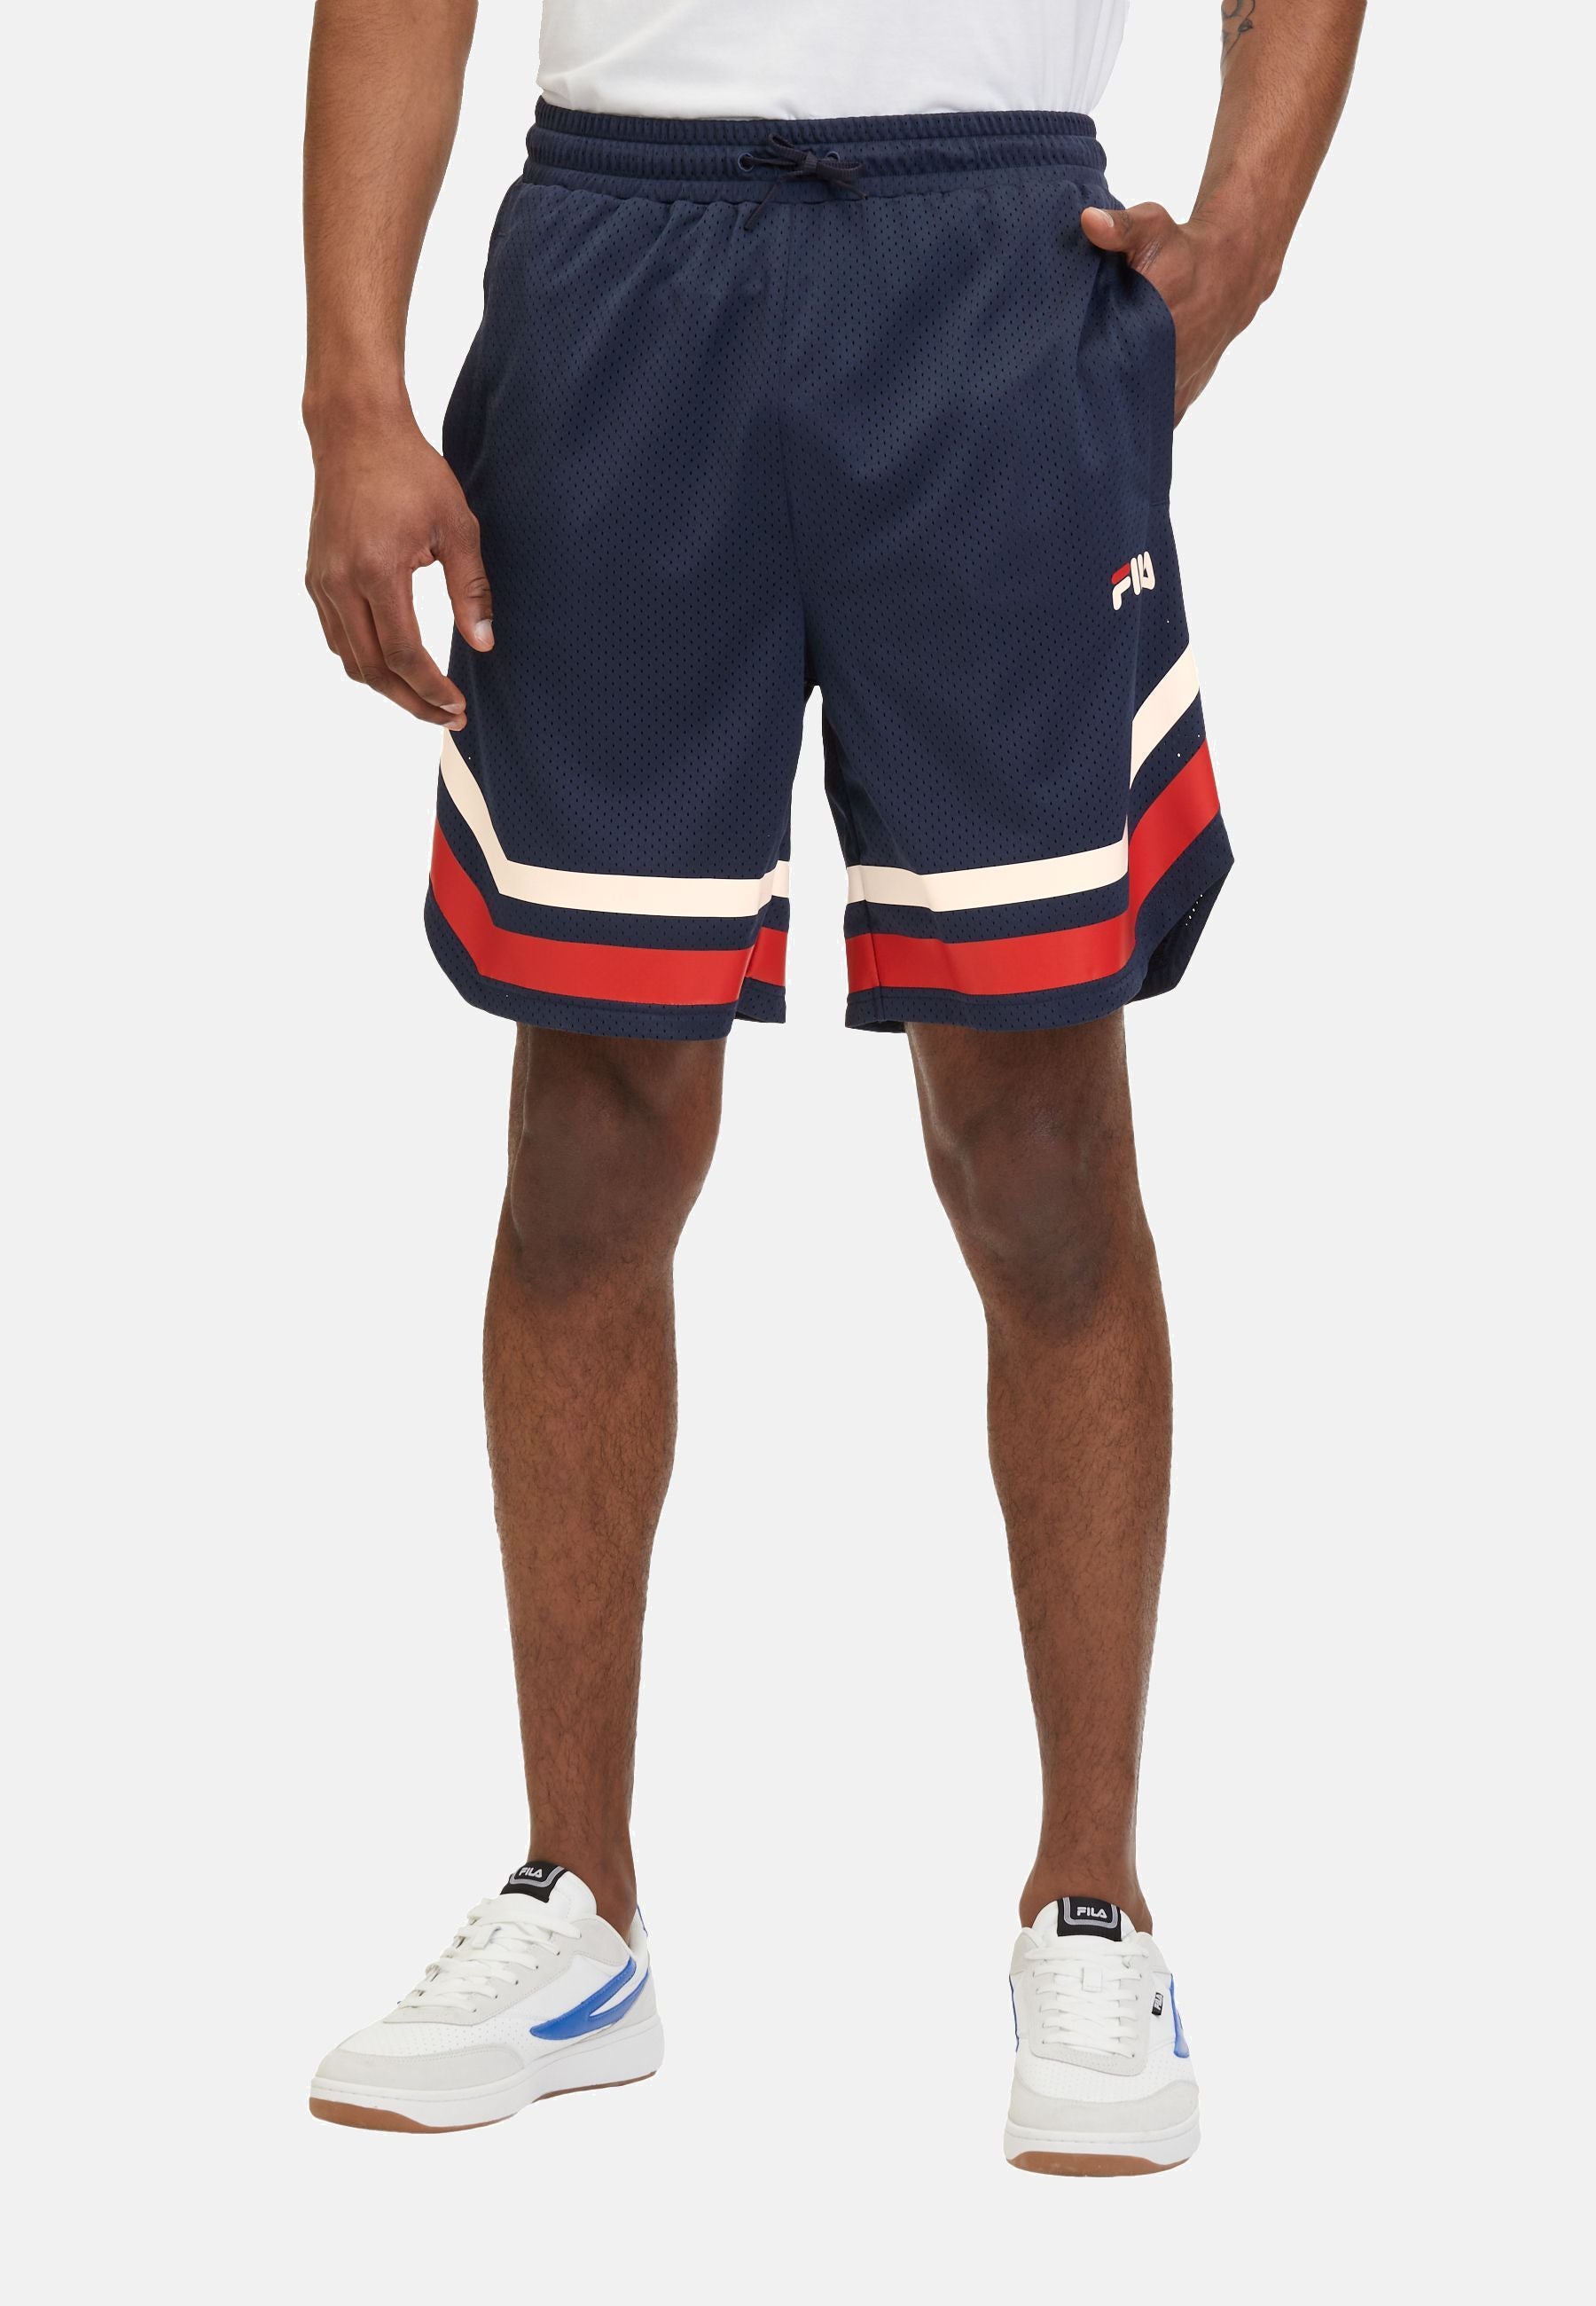 Lashio Baseball Shorts in Black Iris Shorts Fila   